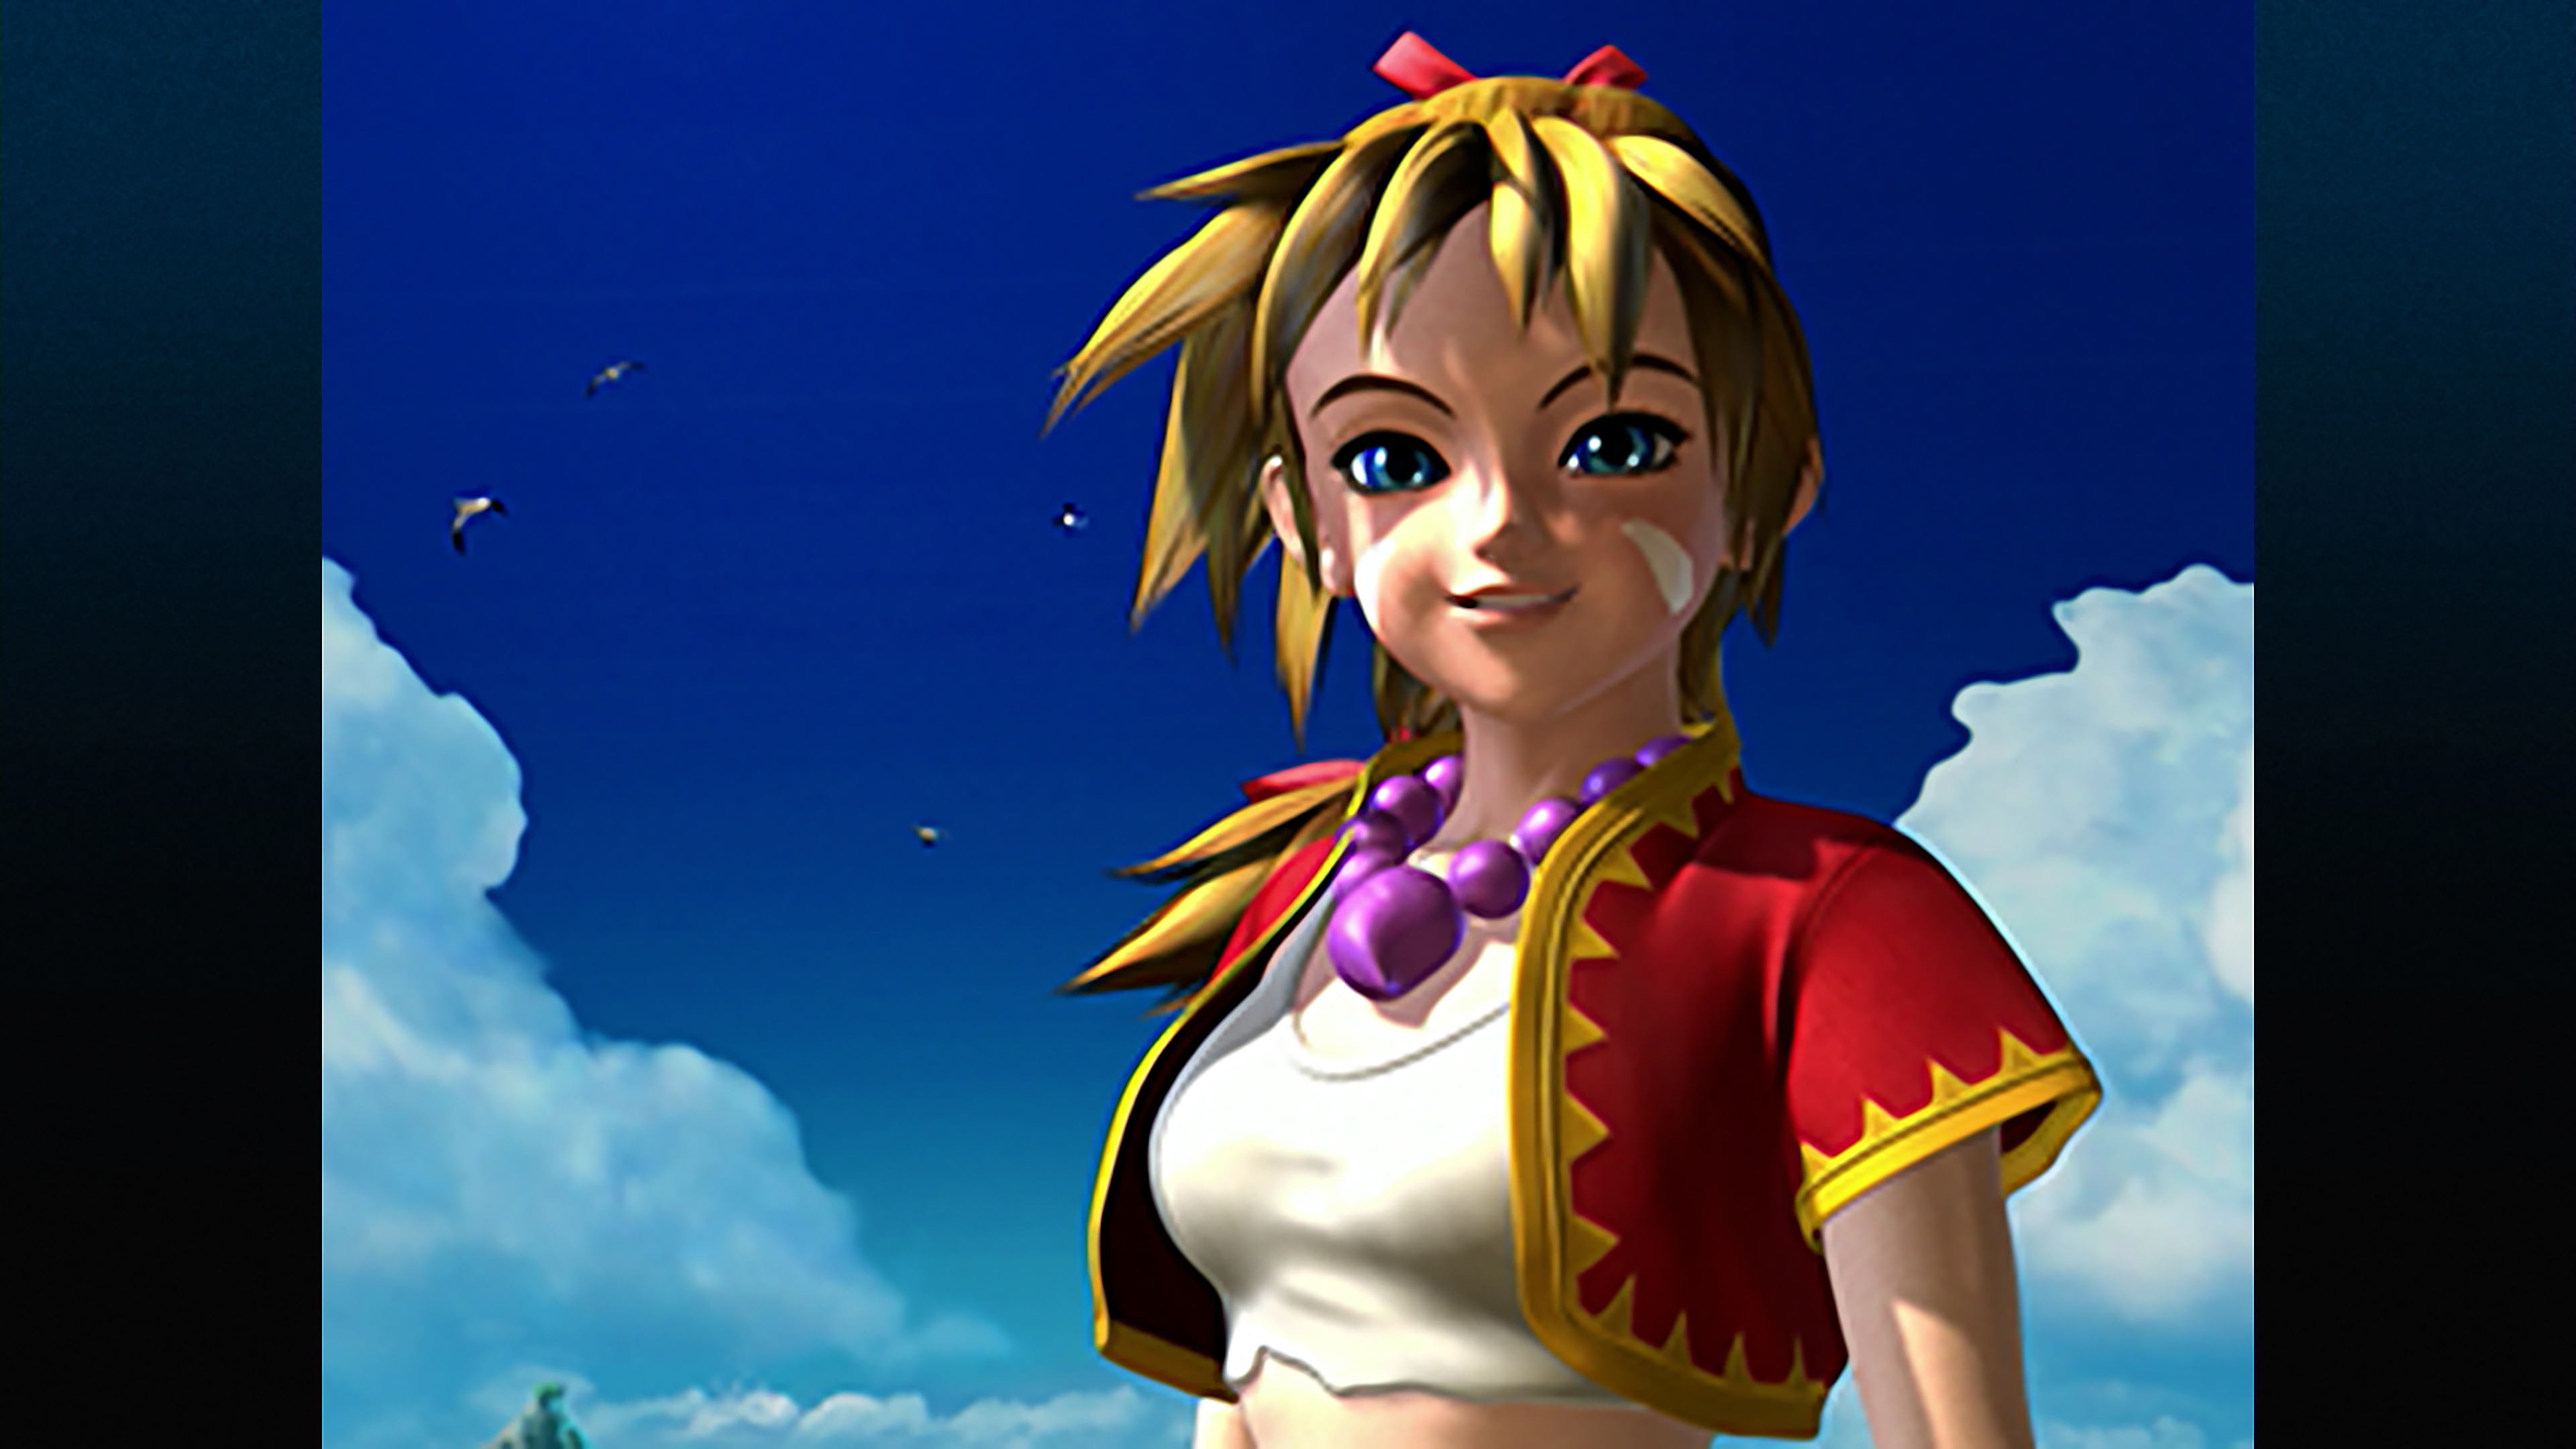 Chrono Cross: The Radical Dreamers Edition – skjermbilde som viser en karakter med blondt hår og rød og gul jakke